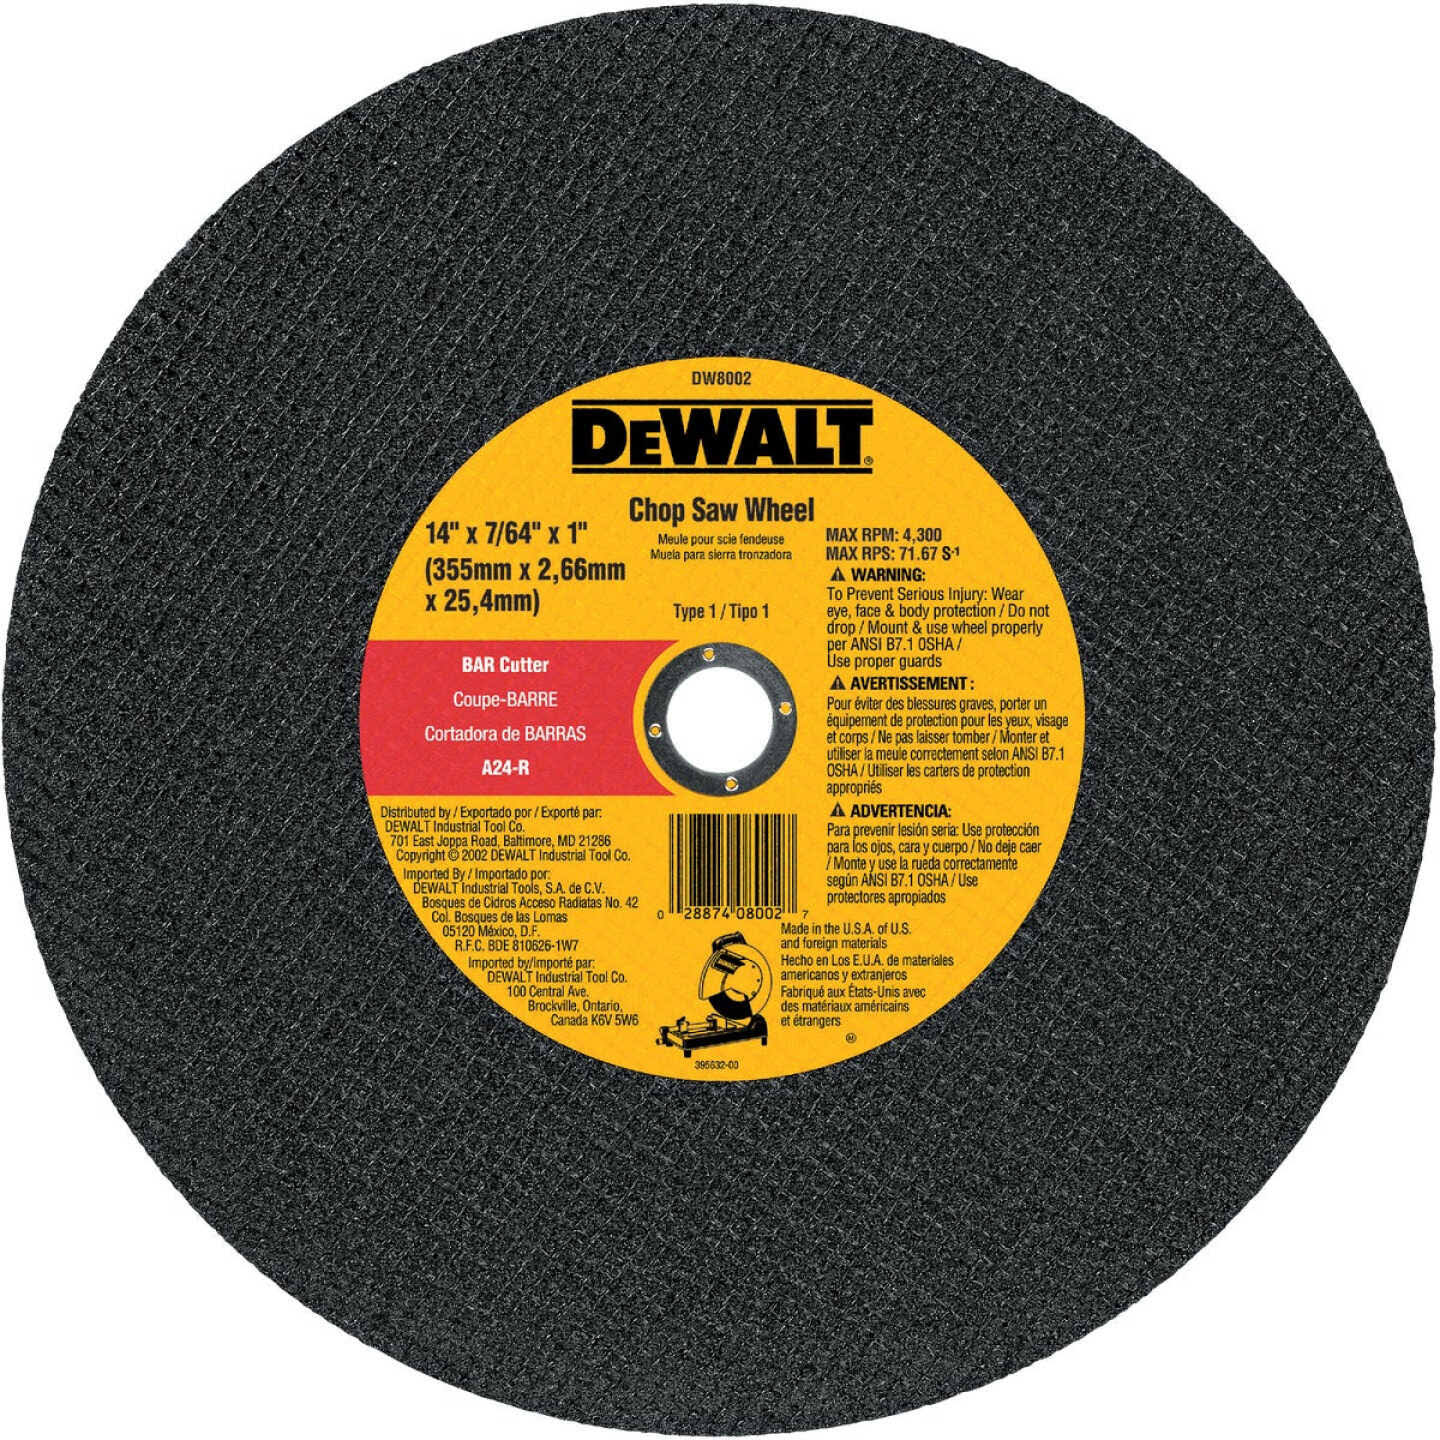 Dewalt DW8002 Bar Cutter Chop Saw Wheel - 14" x 7/64"